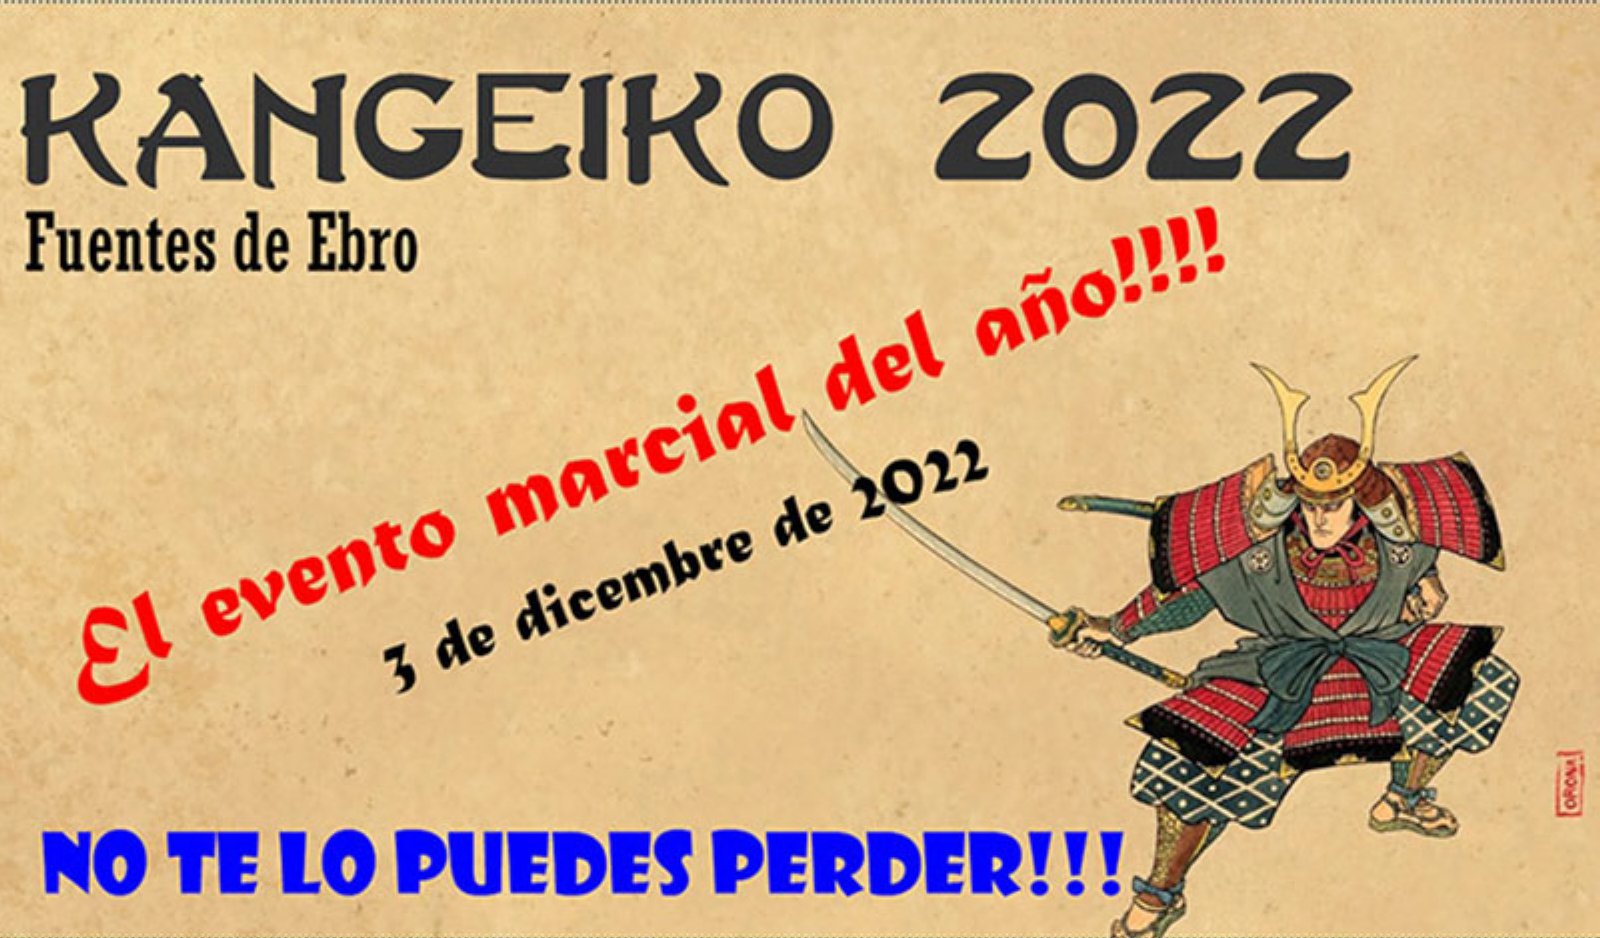 Kangeiko 2022 en Fuentes de Ebro